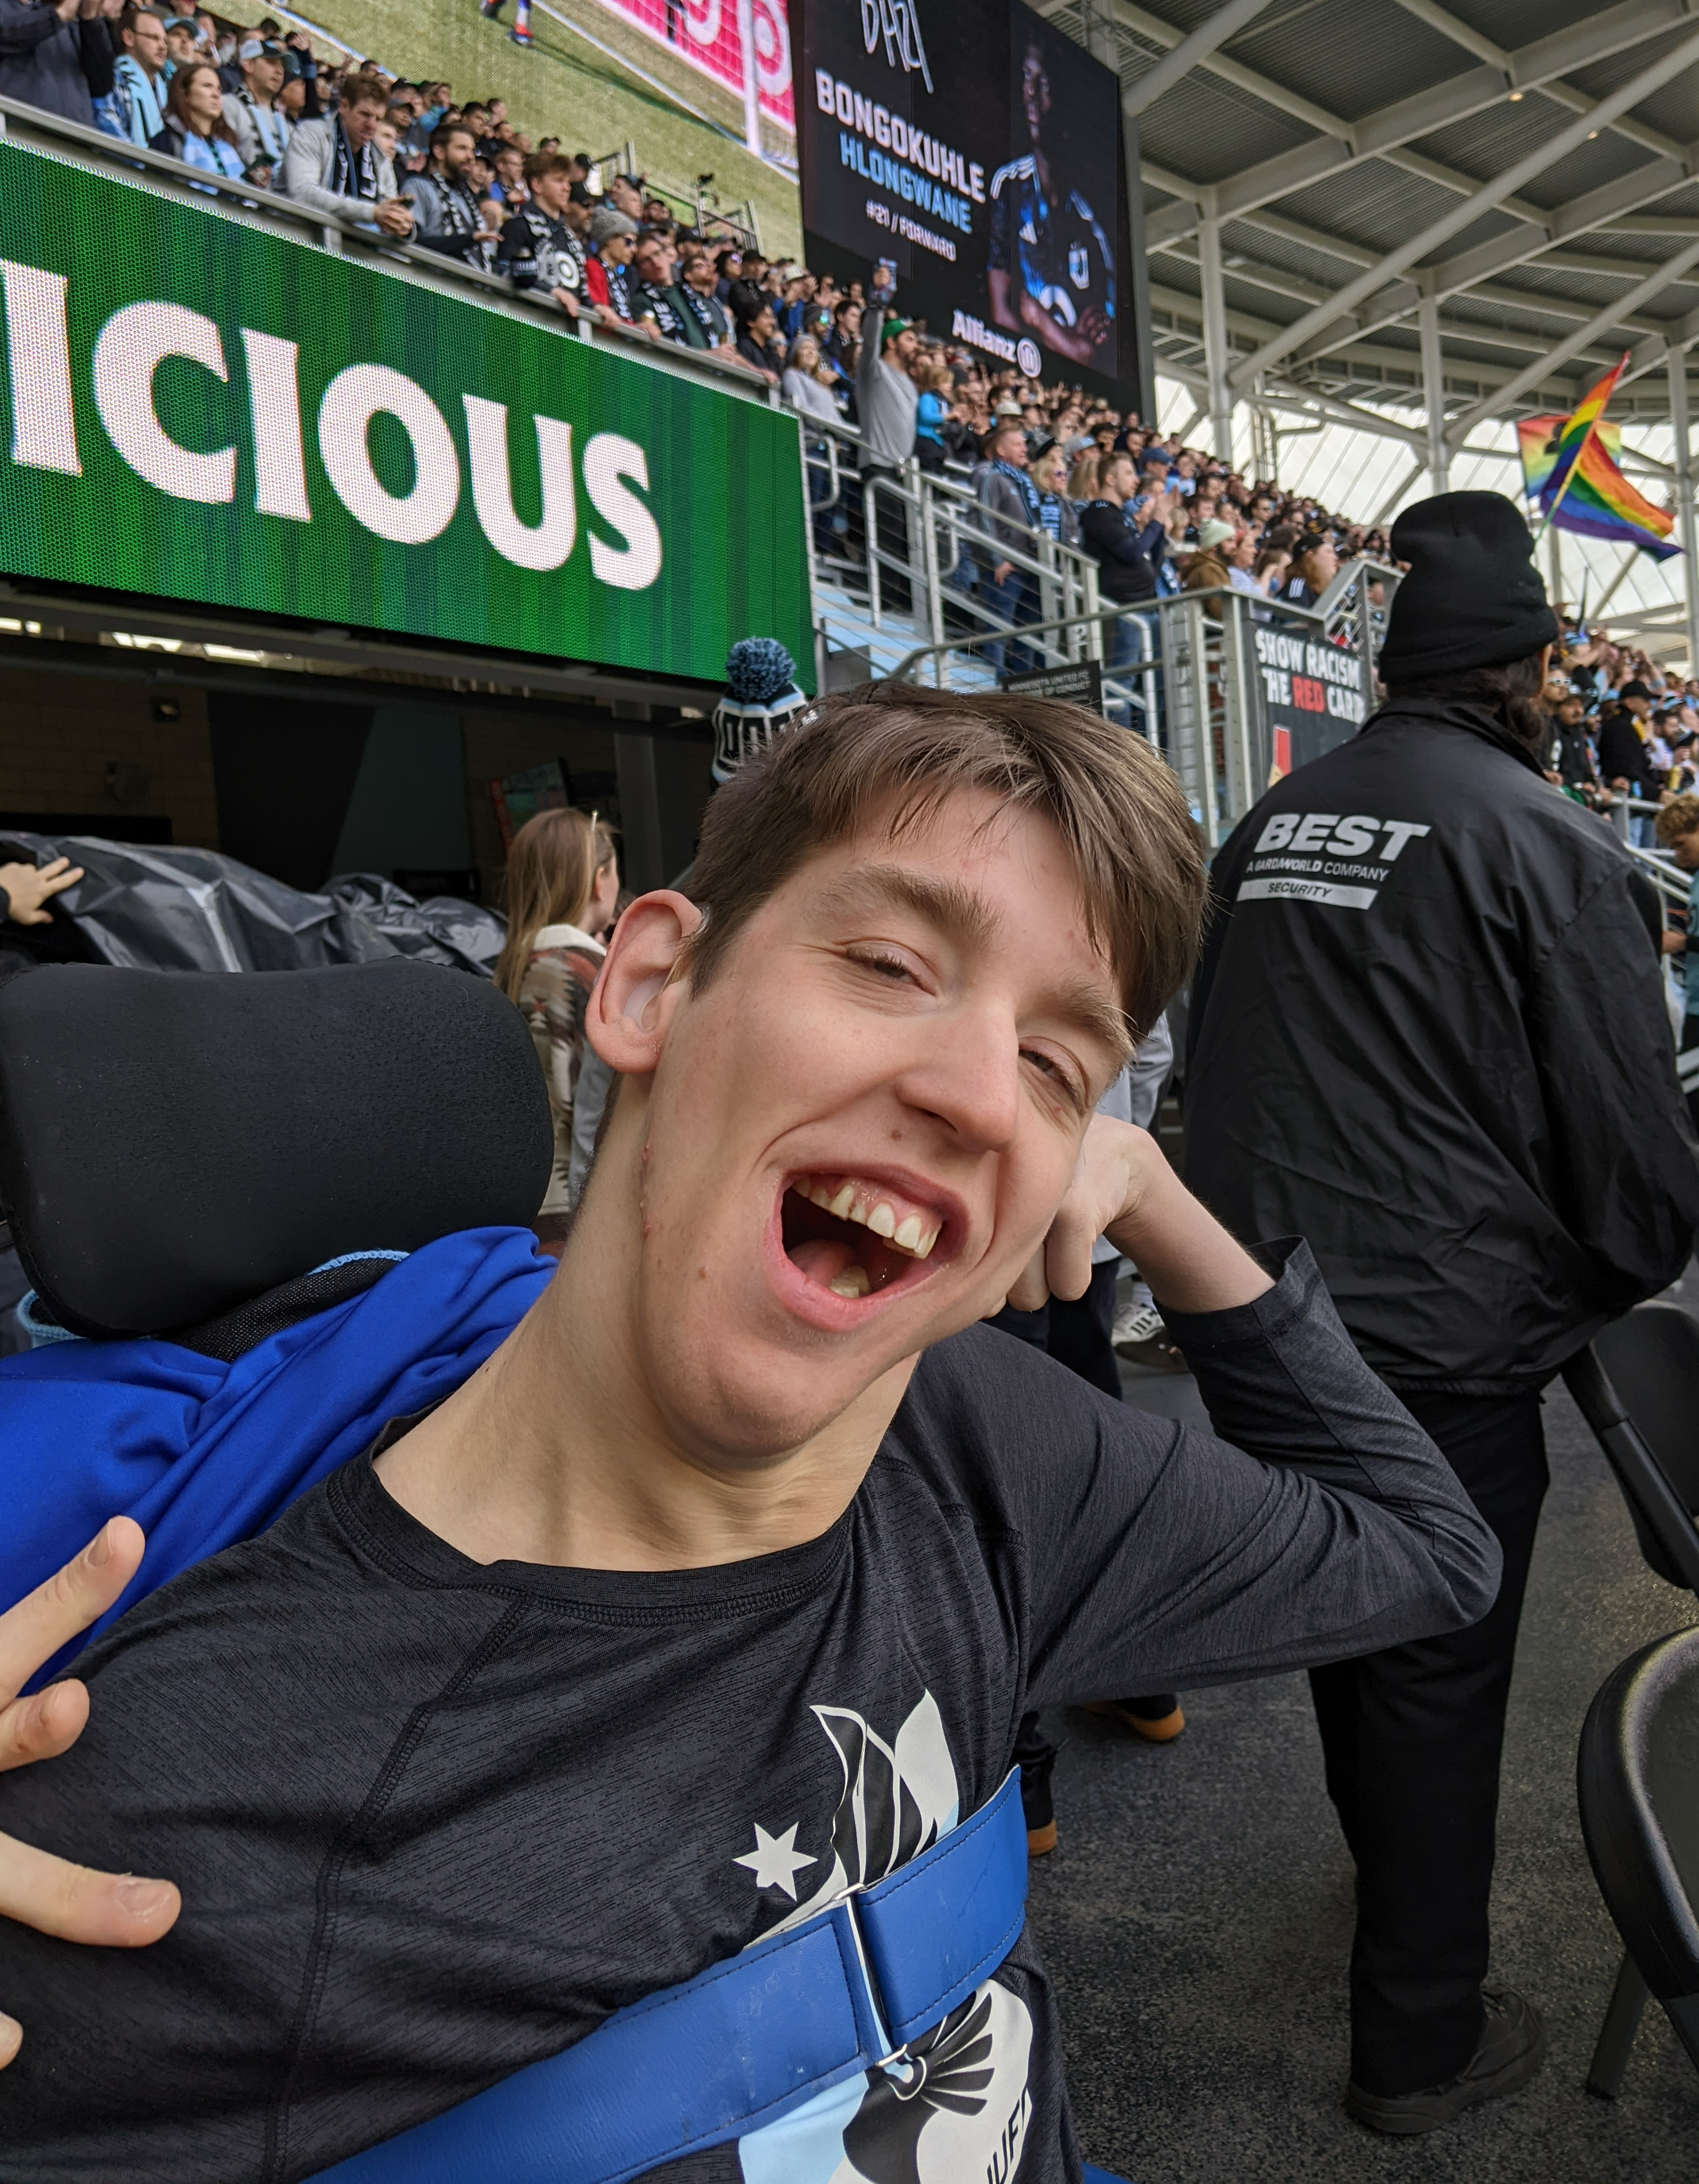 Justin in wheelchair wearing MN Wild shirt, stadium crowd behind